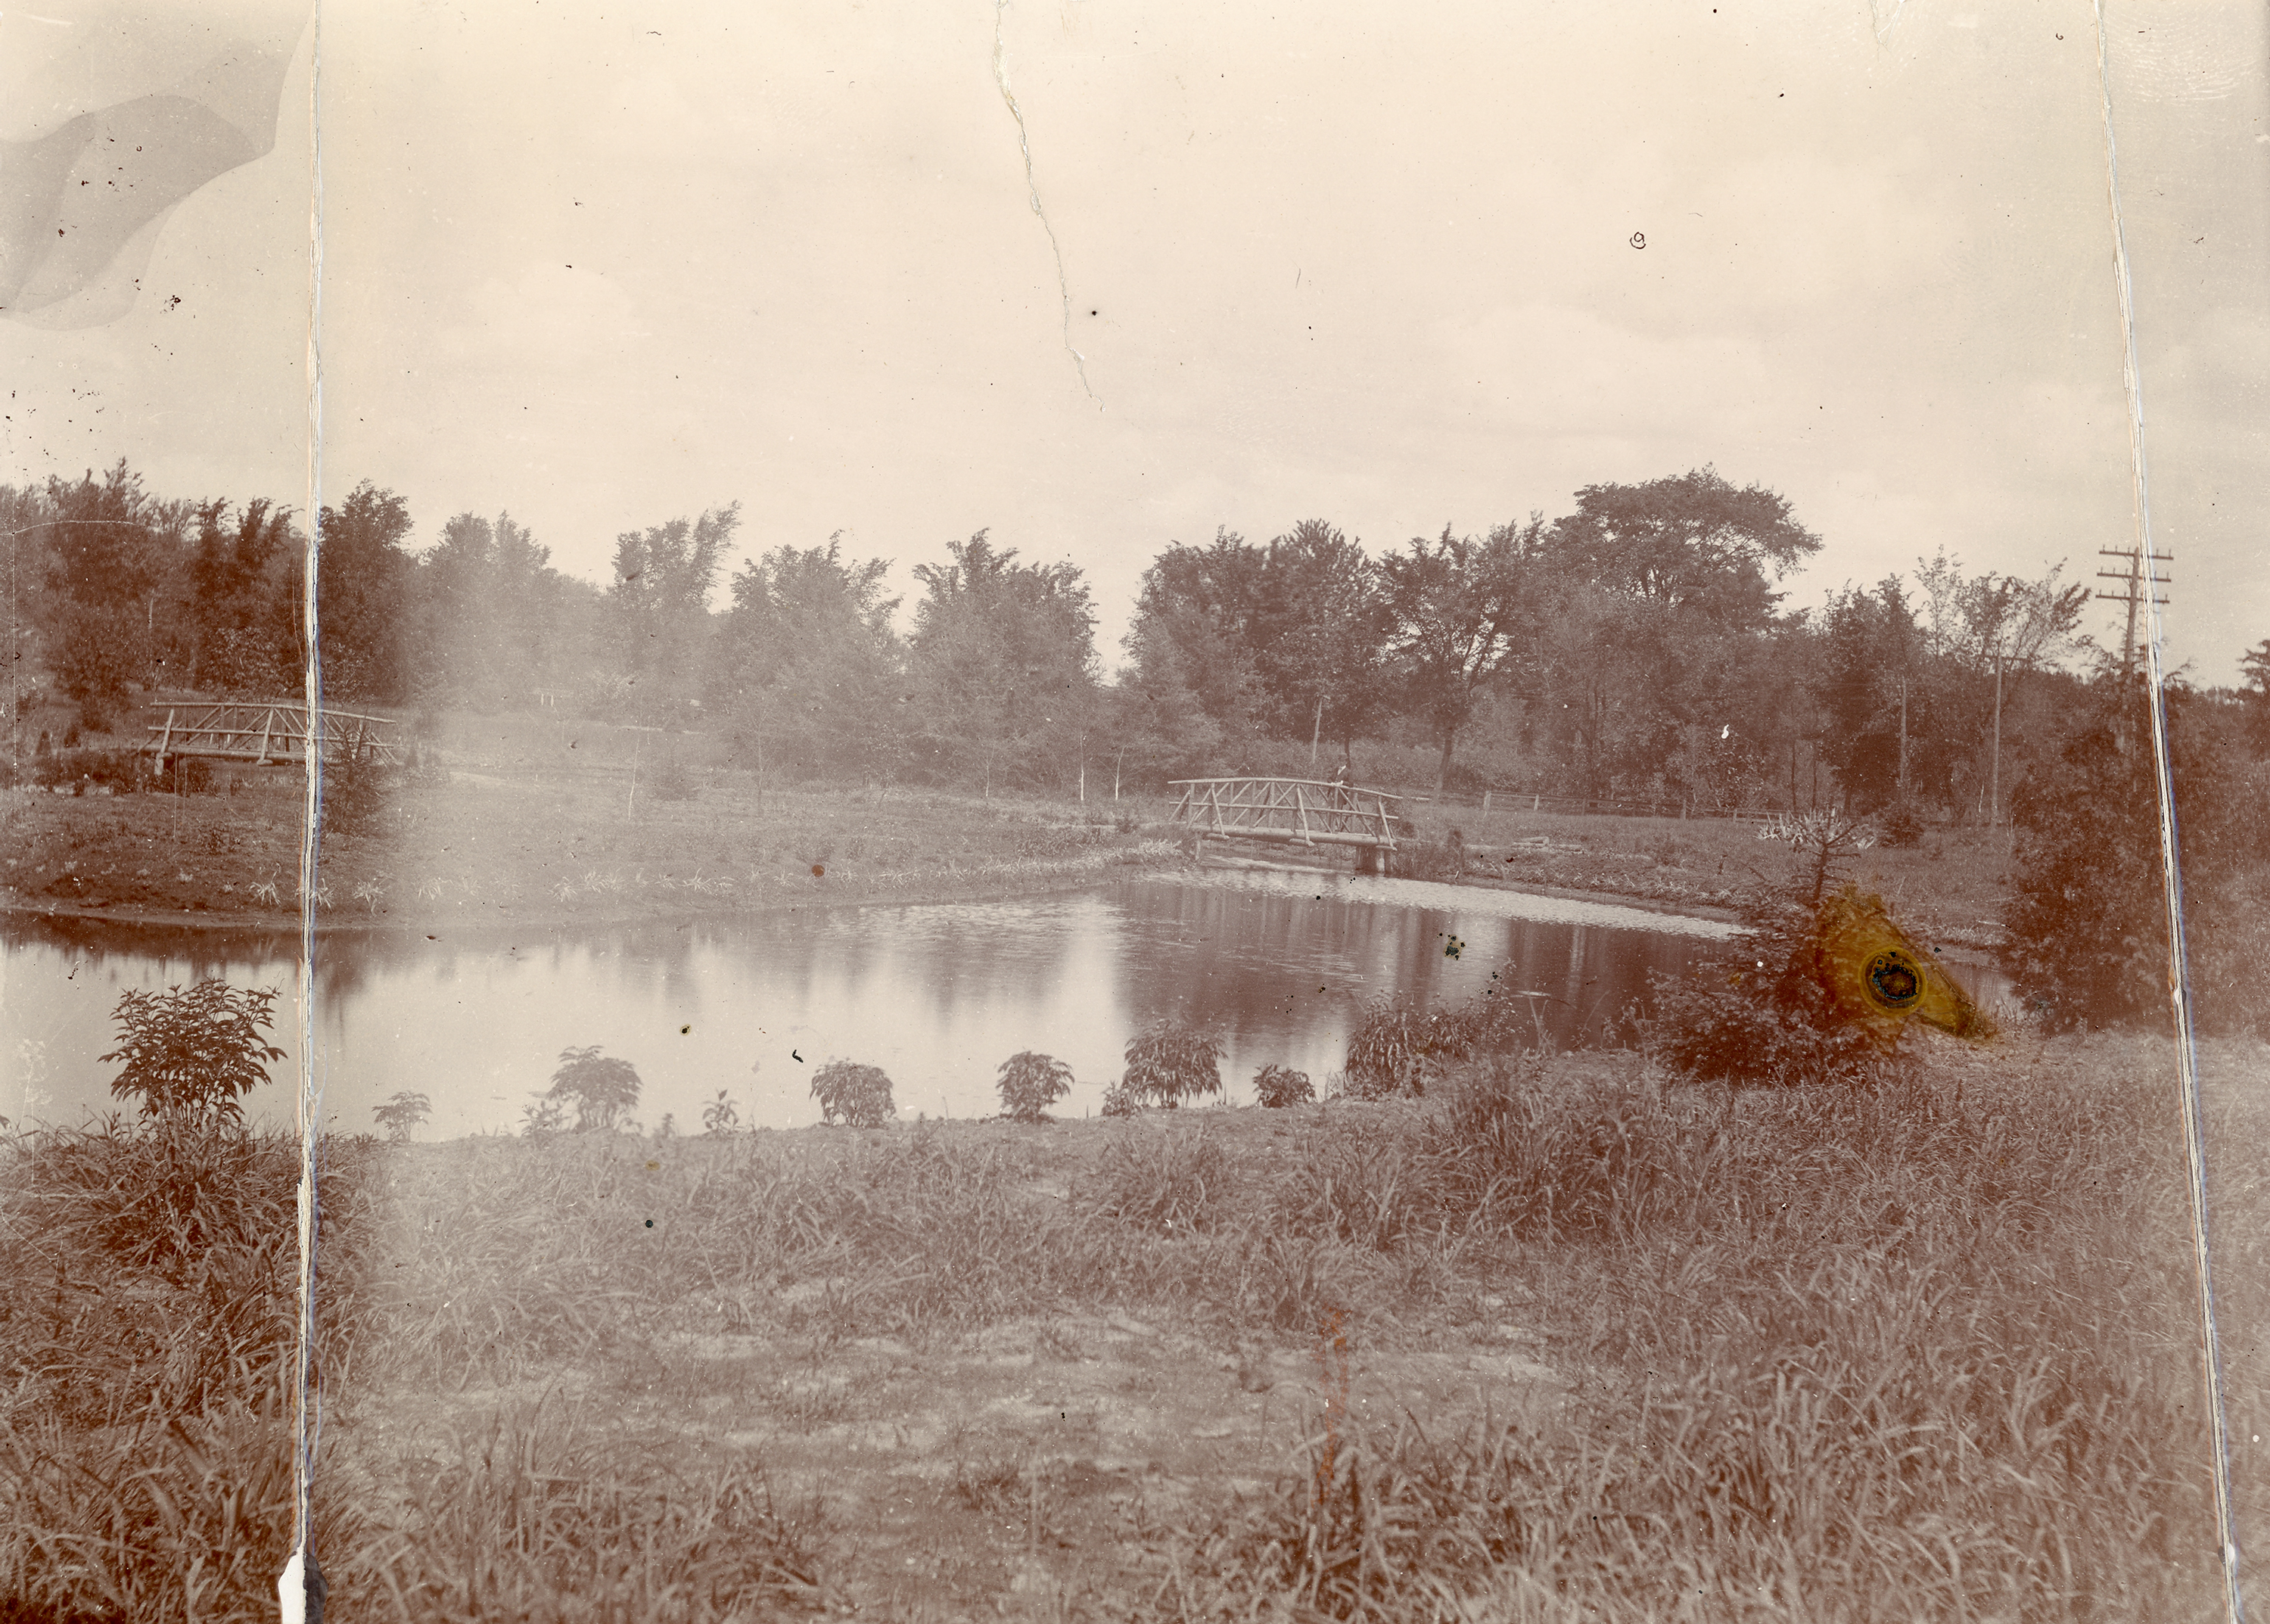 Beal Garden with Footbridges, circa 1895